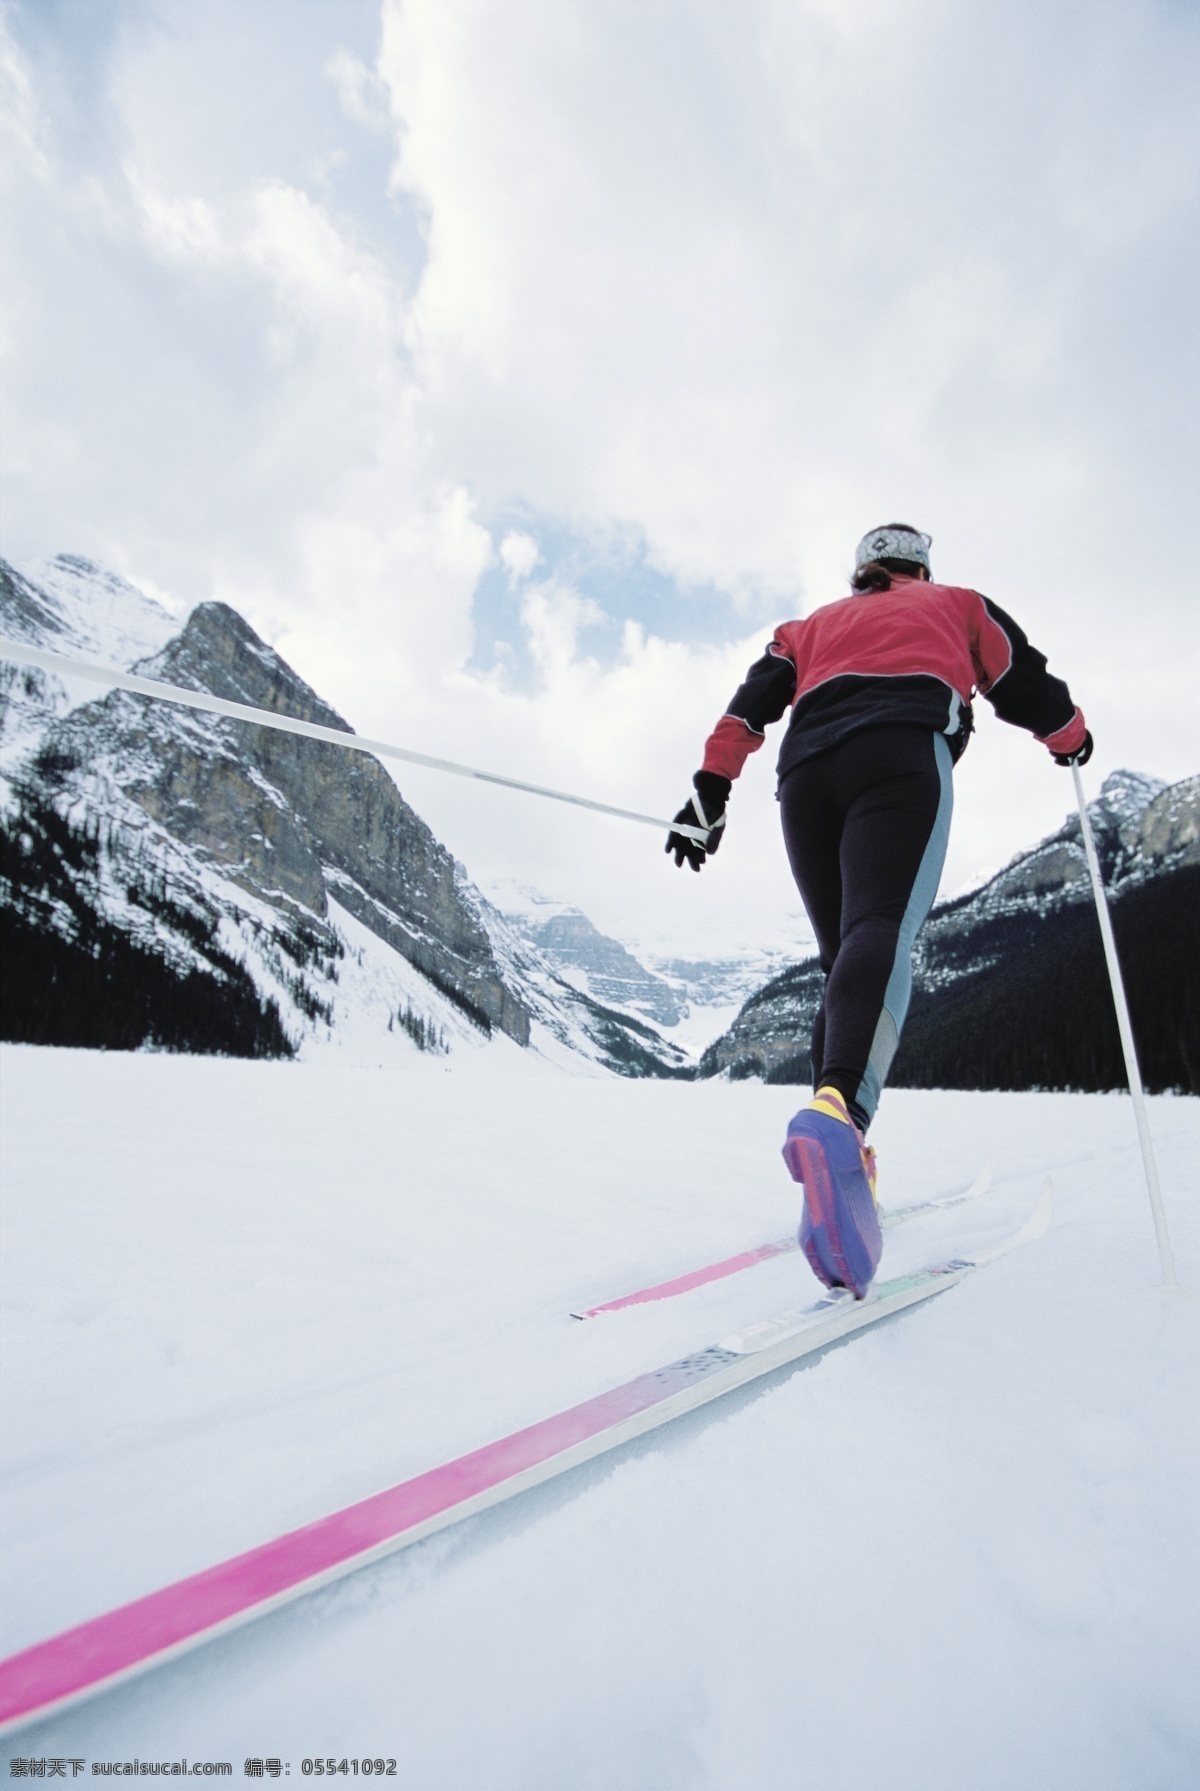 爬山 滑雪 运动员 高清 冬天 雪地运动 划雪运动 极限运动 体育项目 登山 运动图片 生活百科 雪山 美丽 雪景 风景 摄影图片 高清图片 体育运动 白色